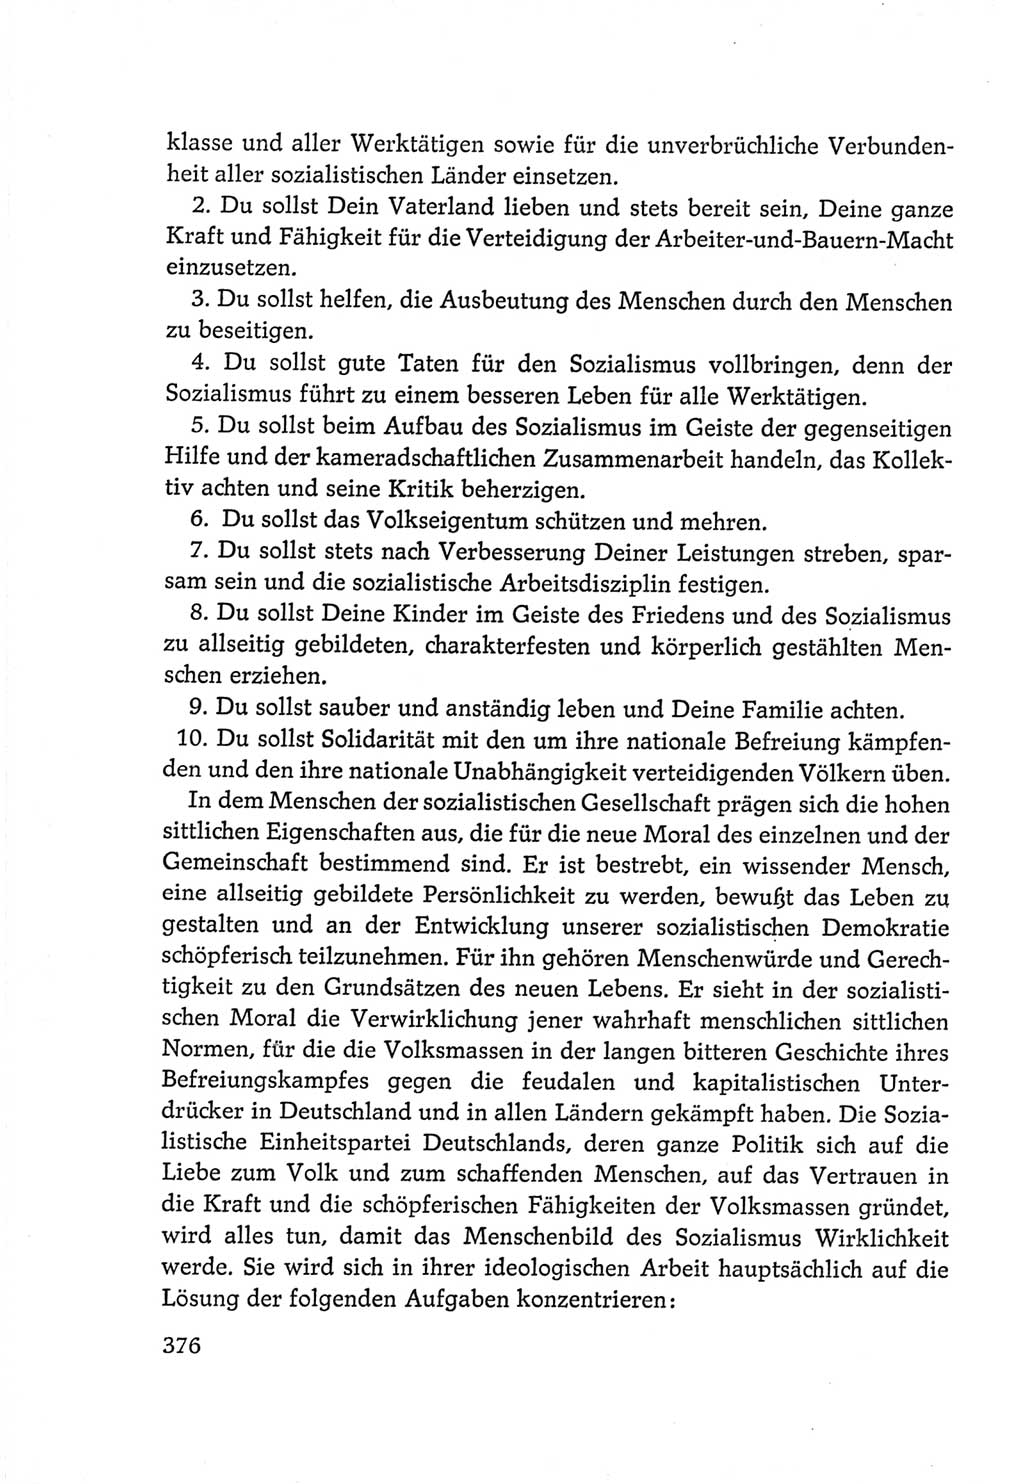 Protokoll der Verhandlungen des Ⅵ. Parteitages der Sozialistischen Einheitspartei Deutschlands (SED) [Deutsche Demokratische Republik (DDR)] 1963, Band Ⅳ, Seite 376 (Prot. Verh. Ⅵ. PT SED DDR 1963, Bd. Ⅳ, S. 376)